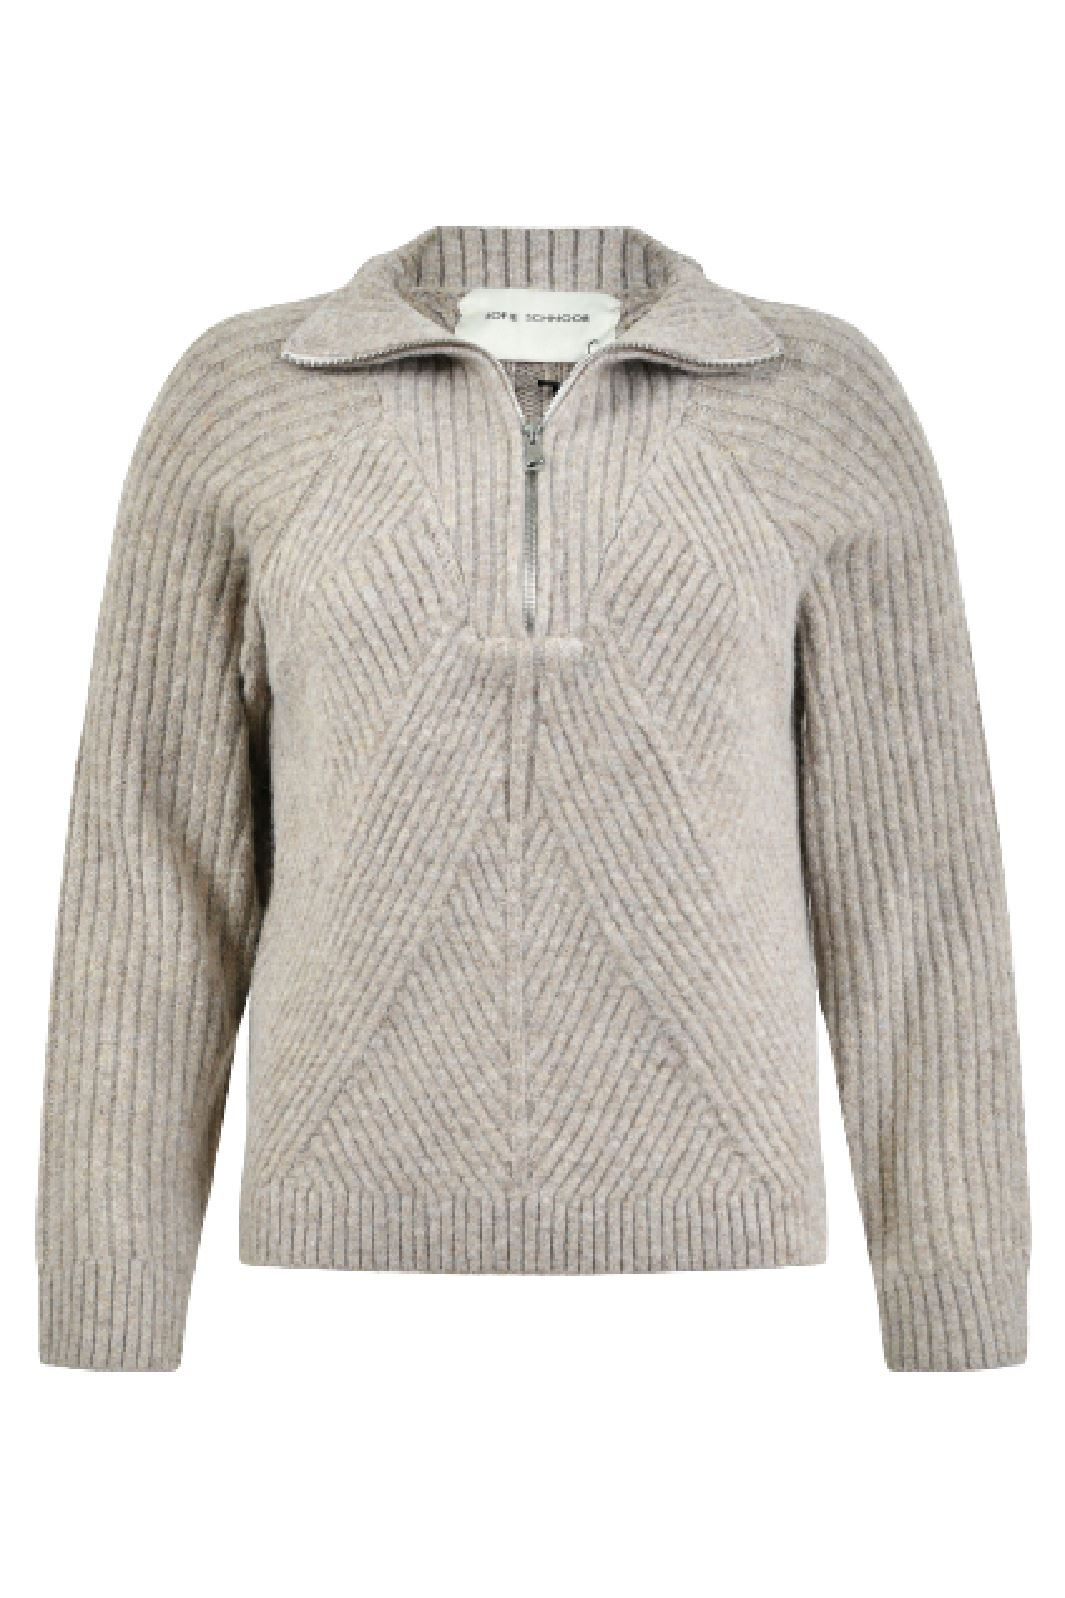 Sofie Schnoor - Snos416 Sweater - Warm Grey Strikbluser 